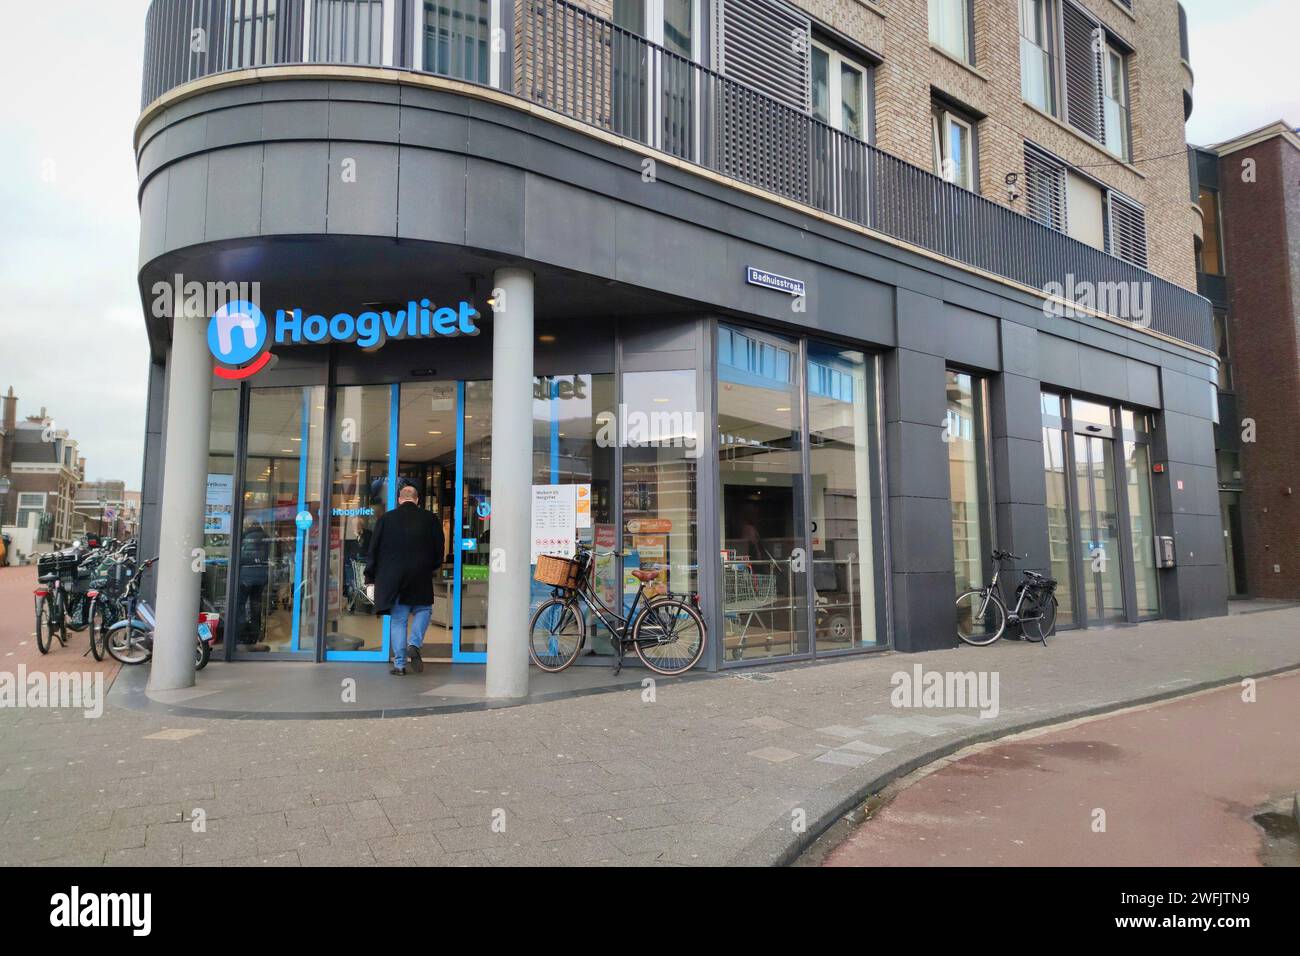 Hoogvliet supermarket in Scheveningen, The Hague, Netherlands Stock Photo